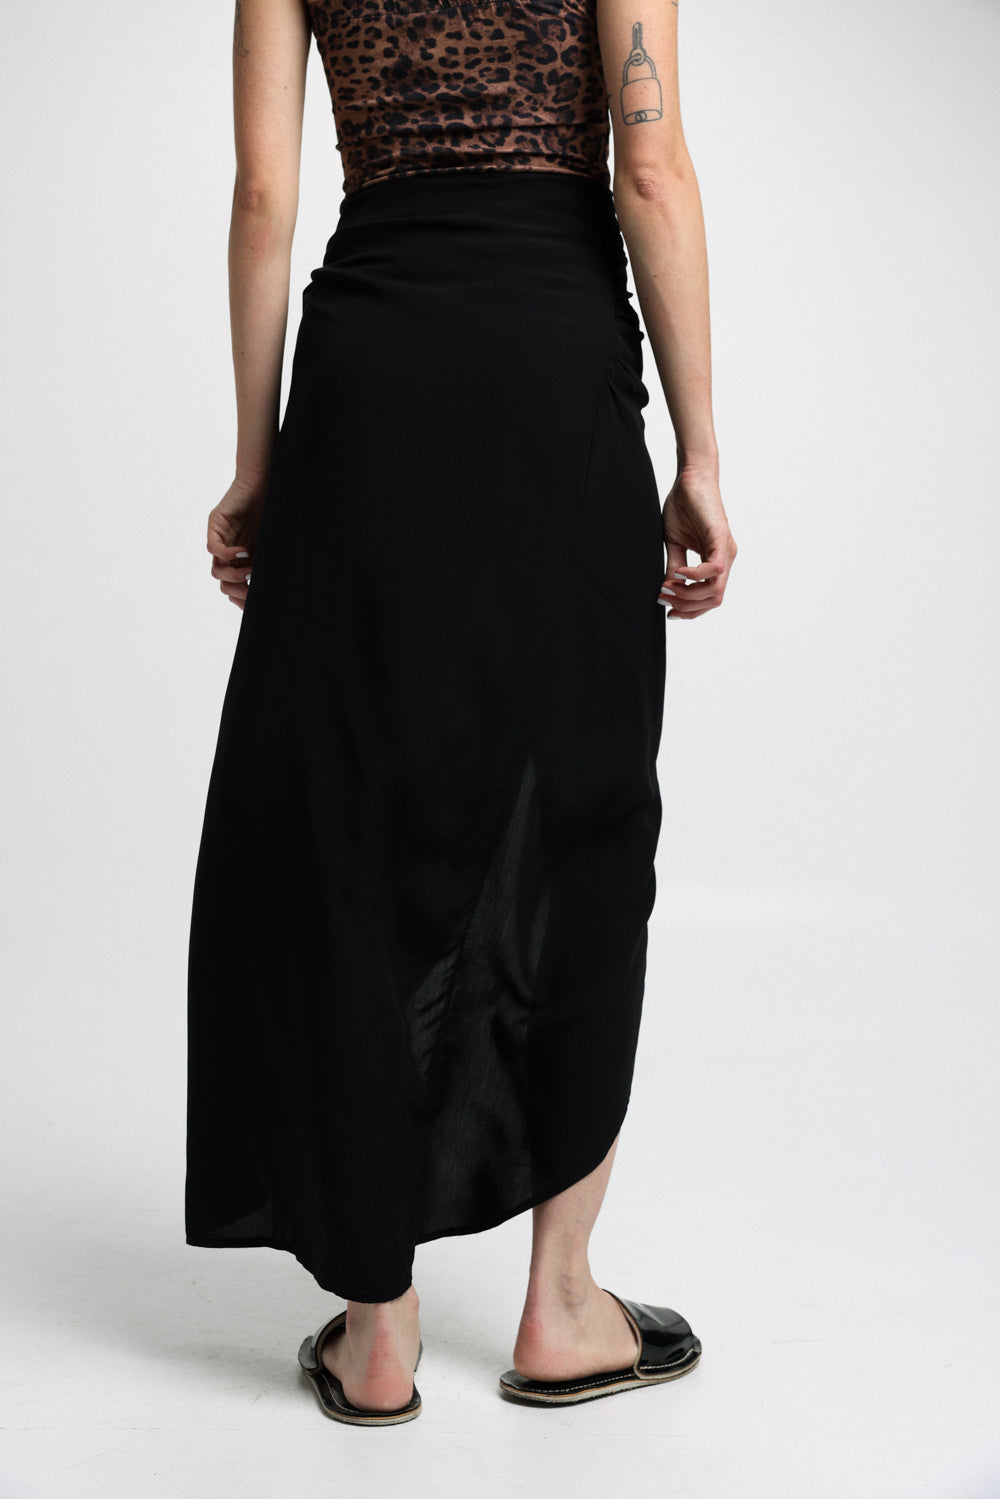 חצאית שחורה EE Black Skirt גב